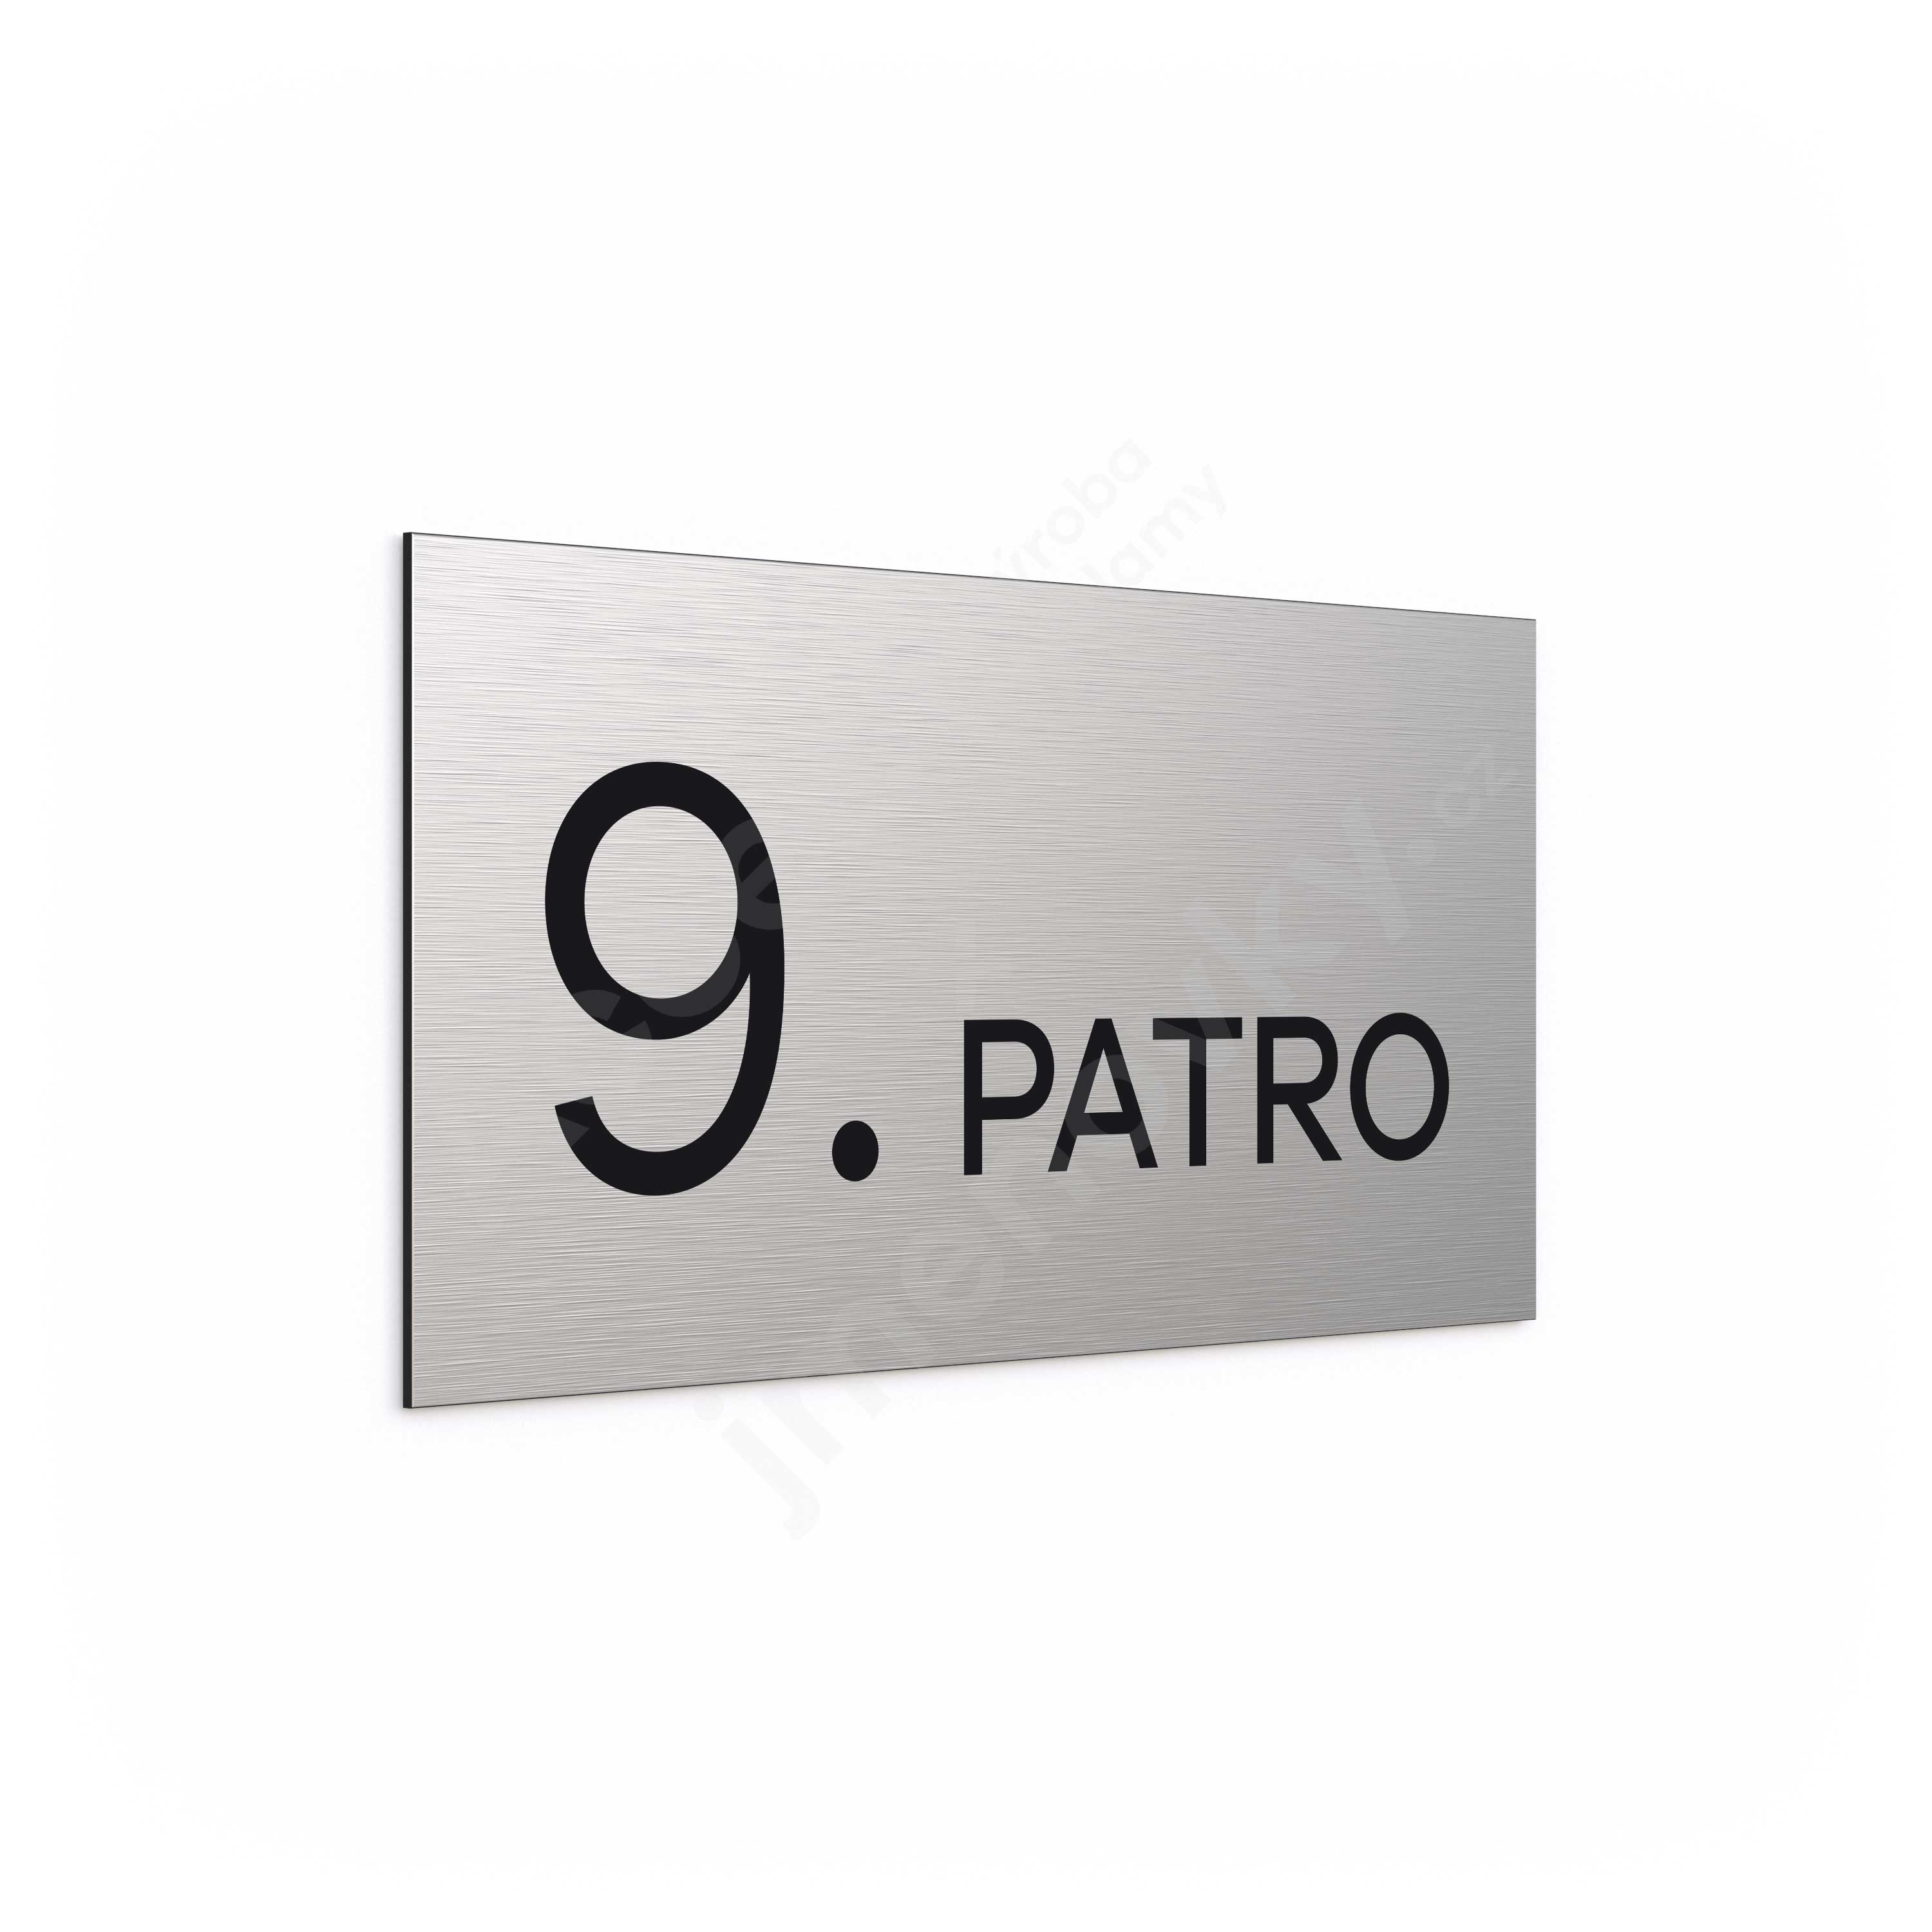 Označení podlaží "9. PATRO" - stříbrná tabulka - černý popis